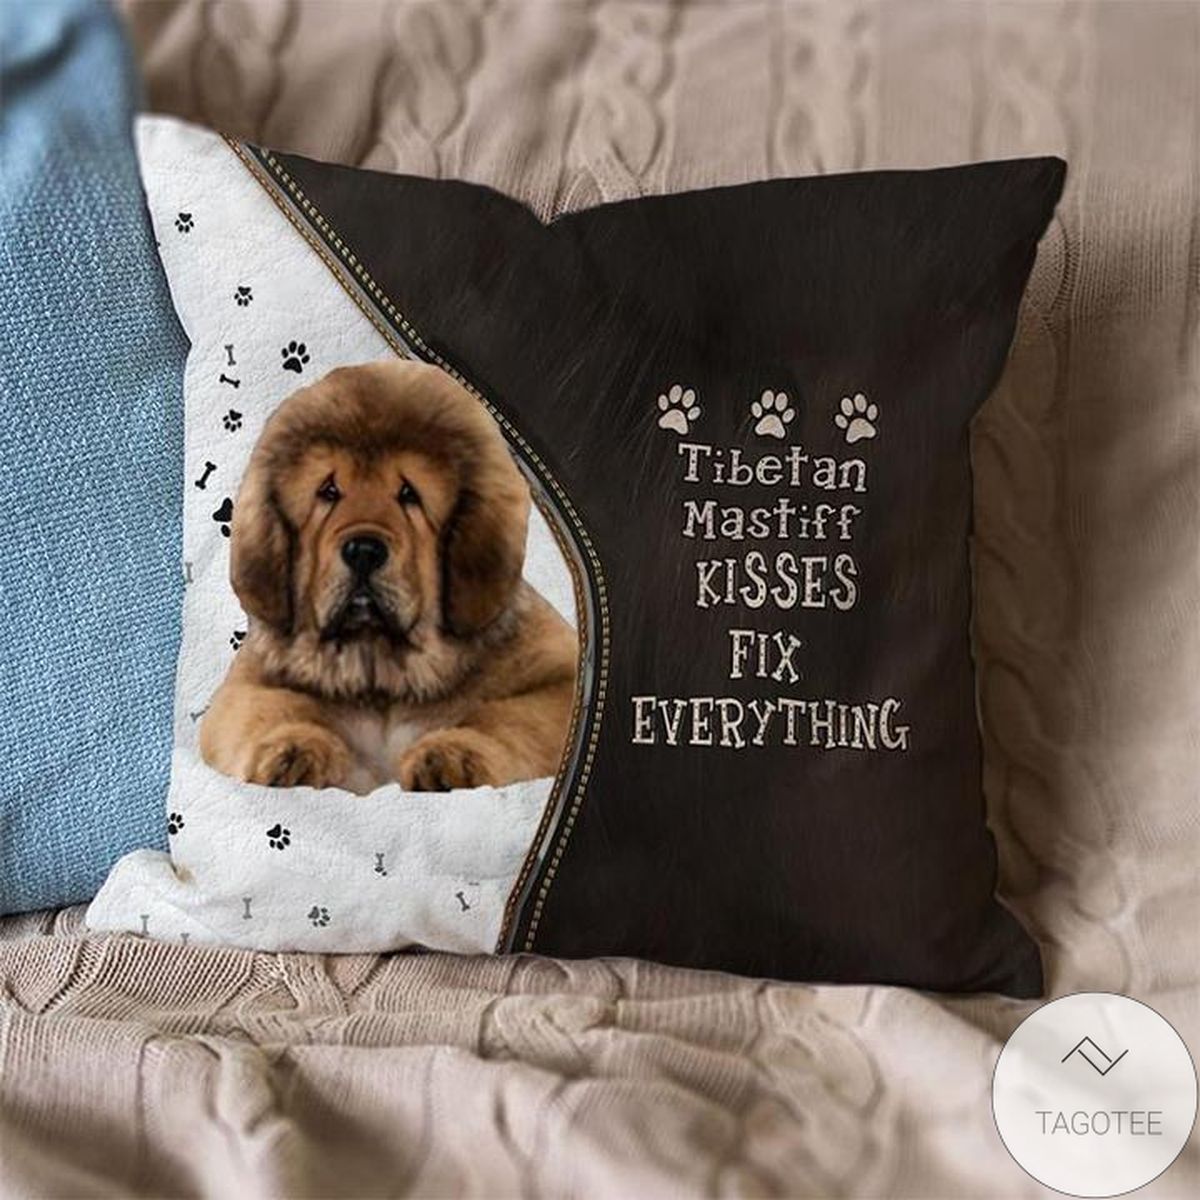 Tibetan-Mastiff Kisses Fix Everything Pillowcase